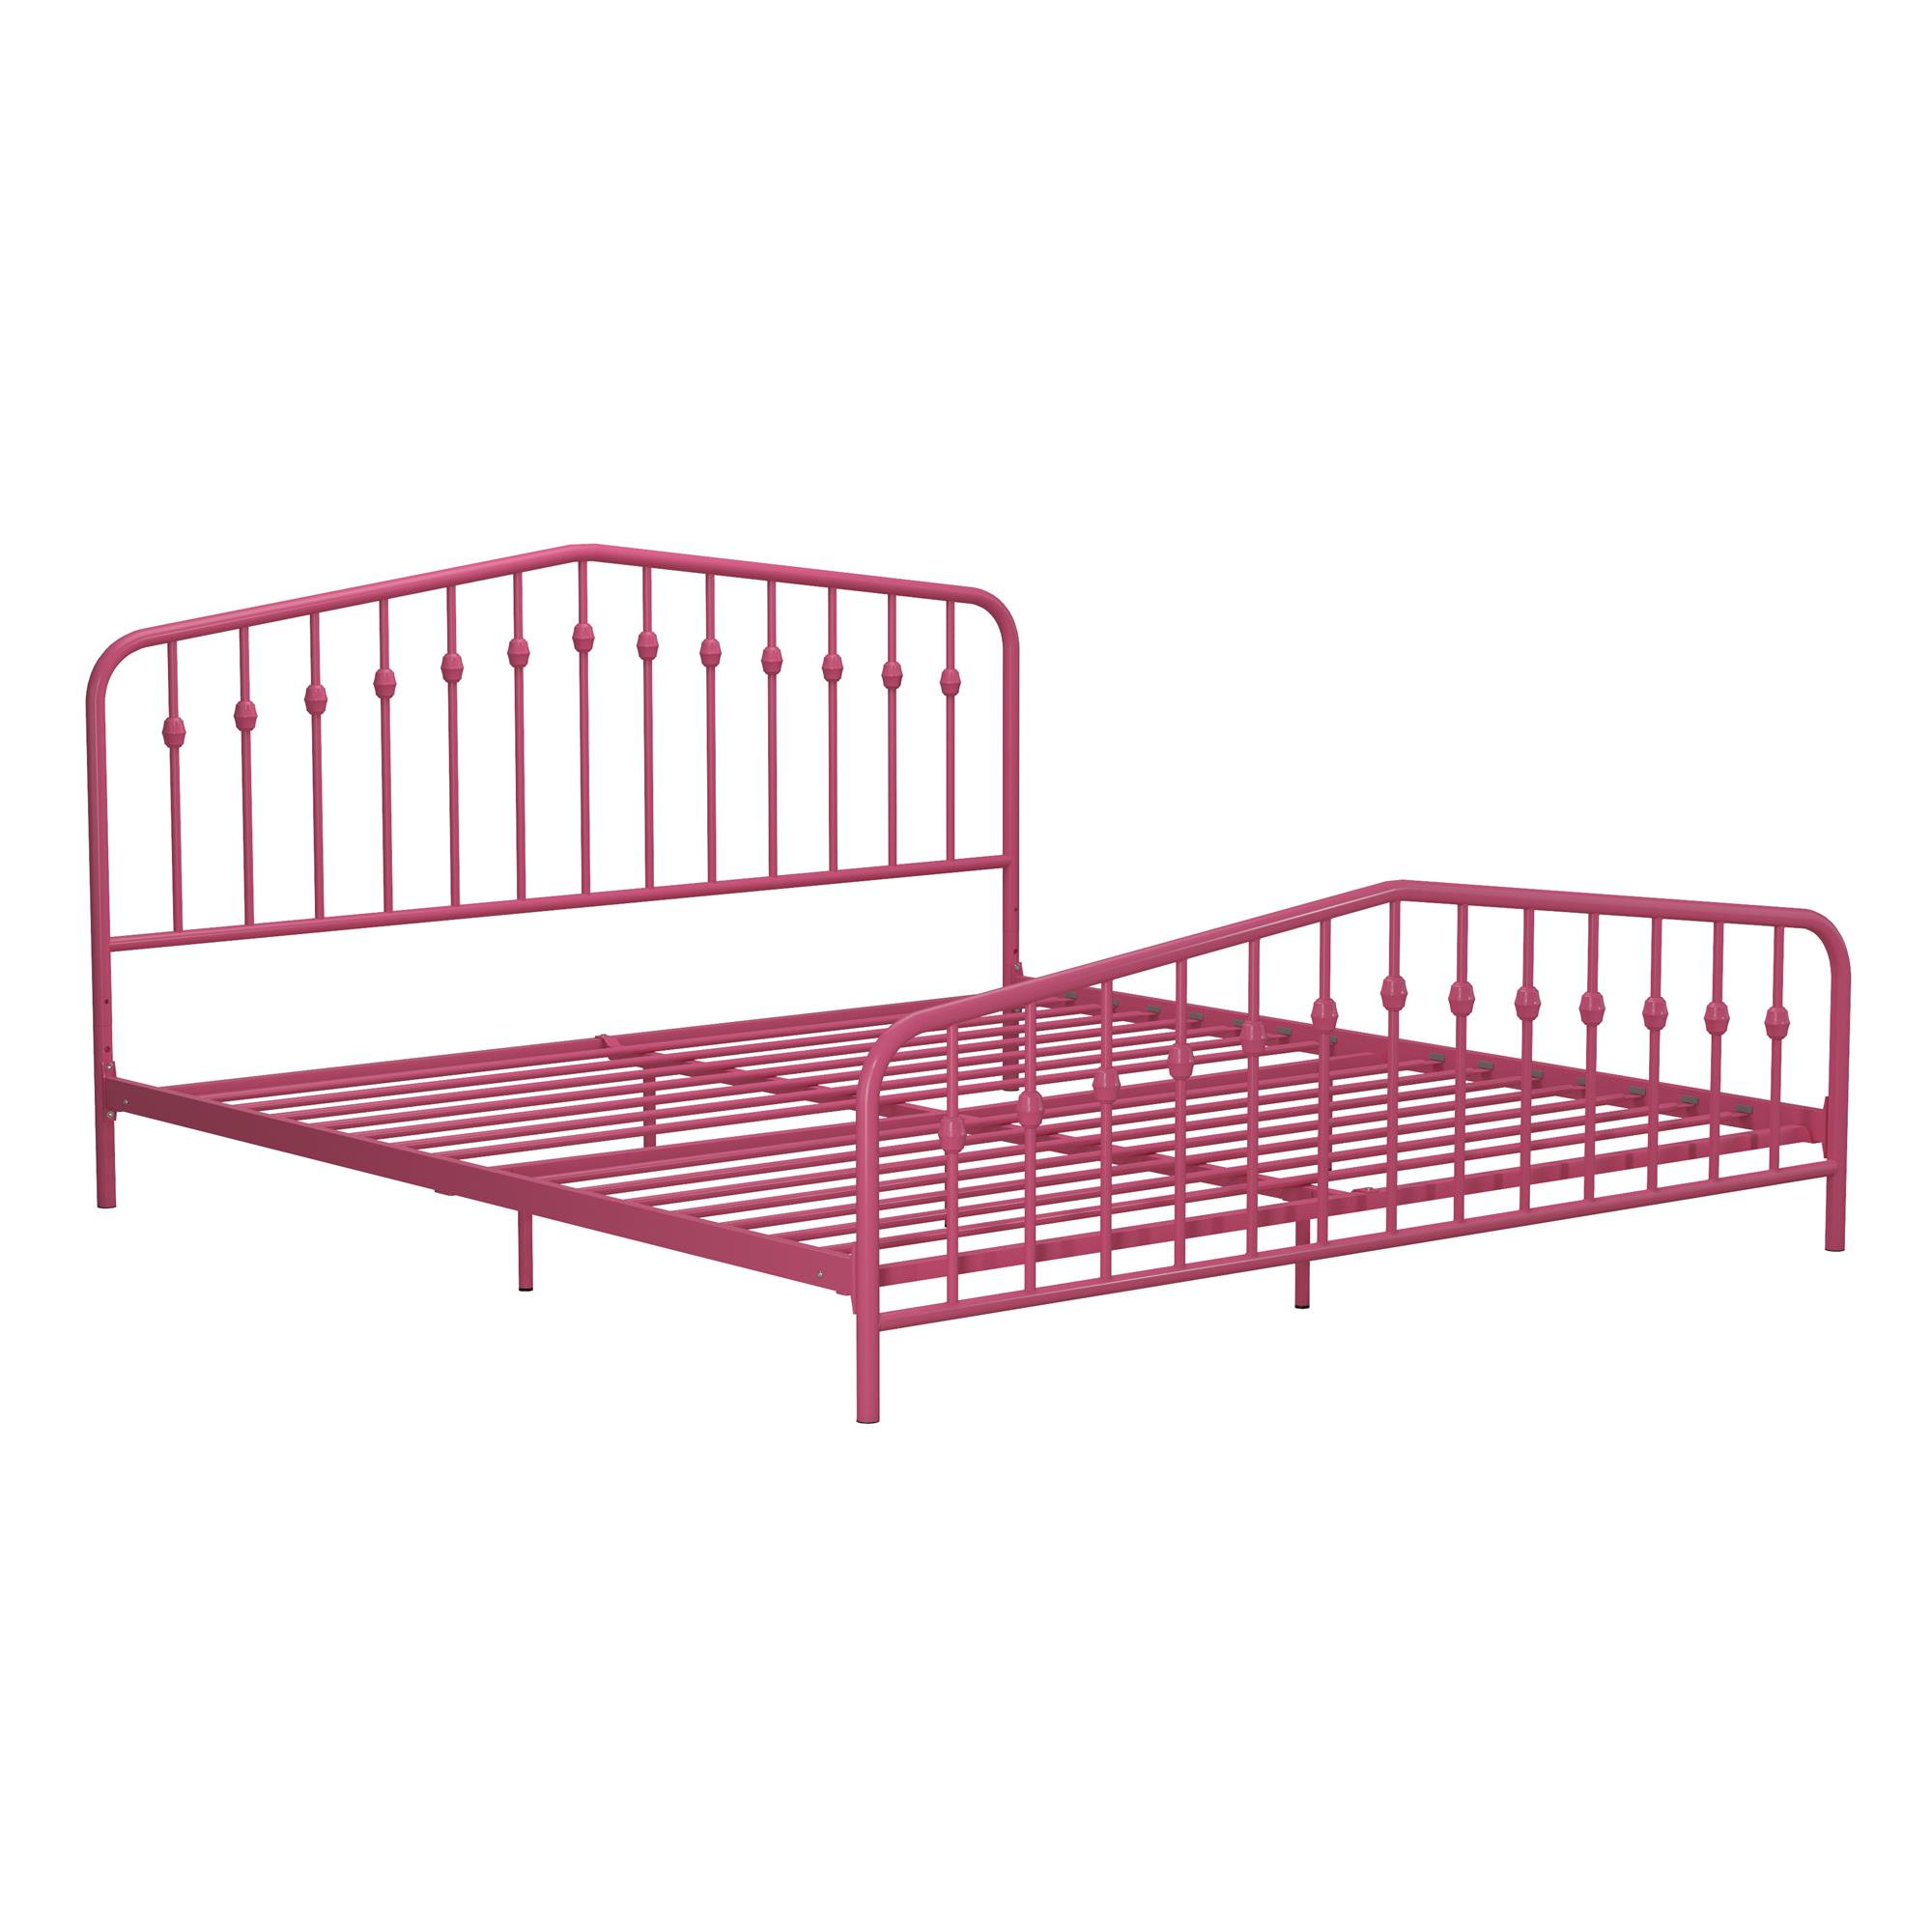 Novogratz Bushwick Metal Platform Bed Frame with Headboard, King, Hot Pink - image 4 of 26